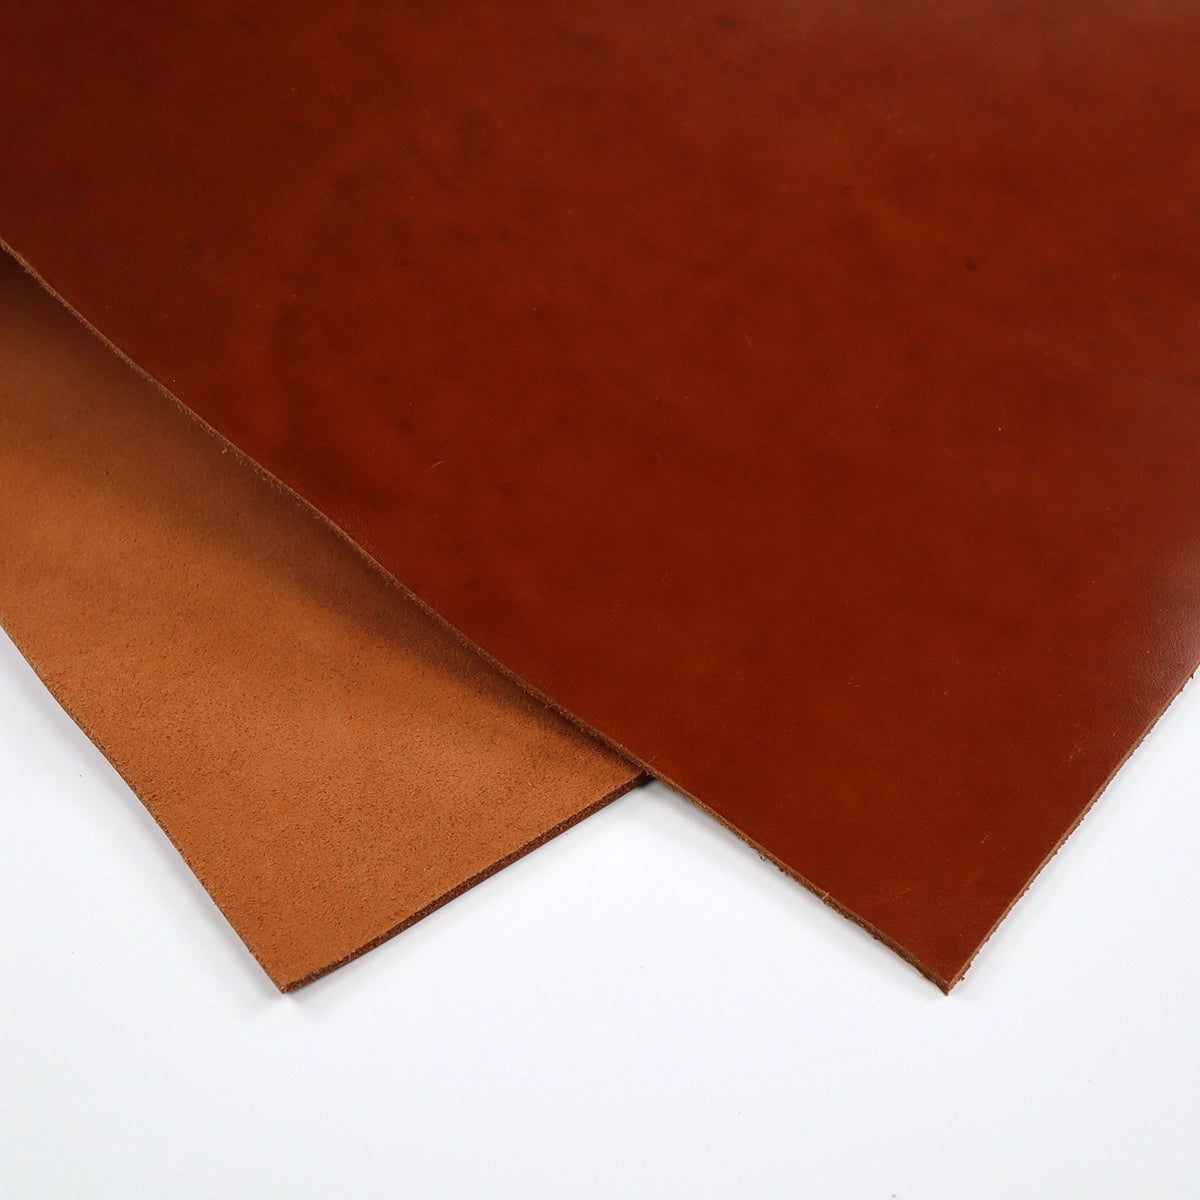 Sienna Oil Tan 4-5oz Leather Pieces